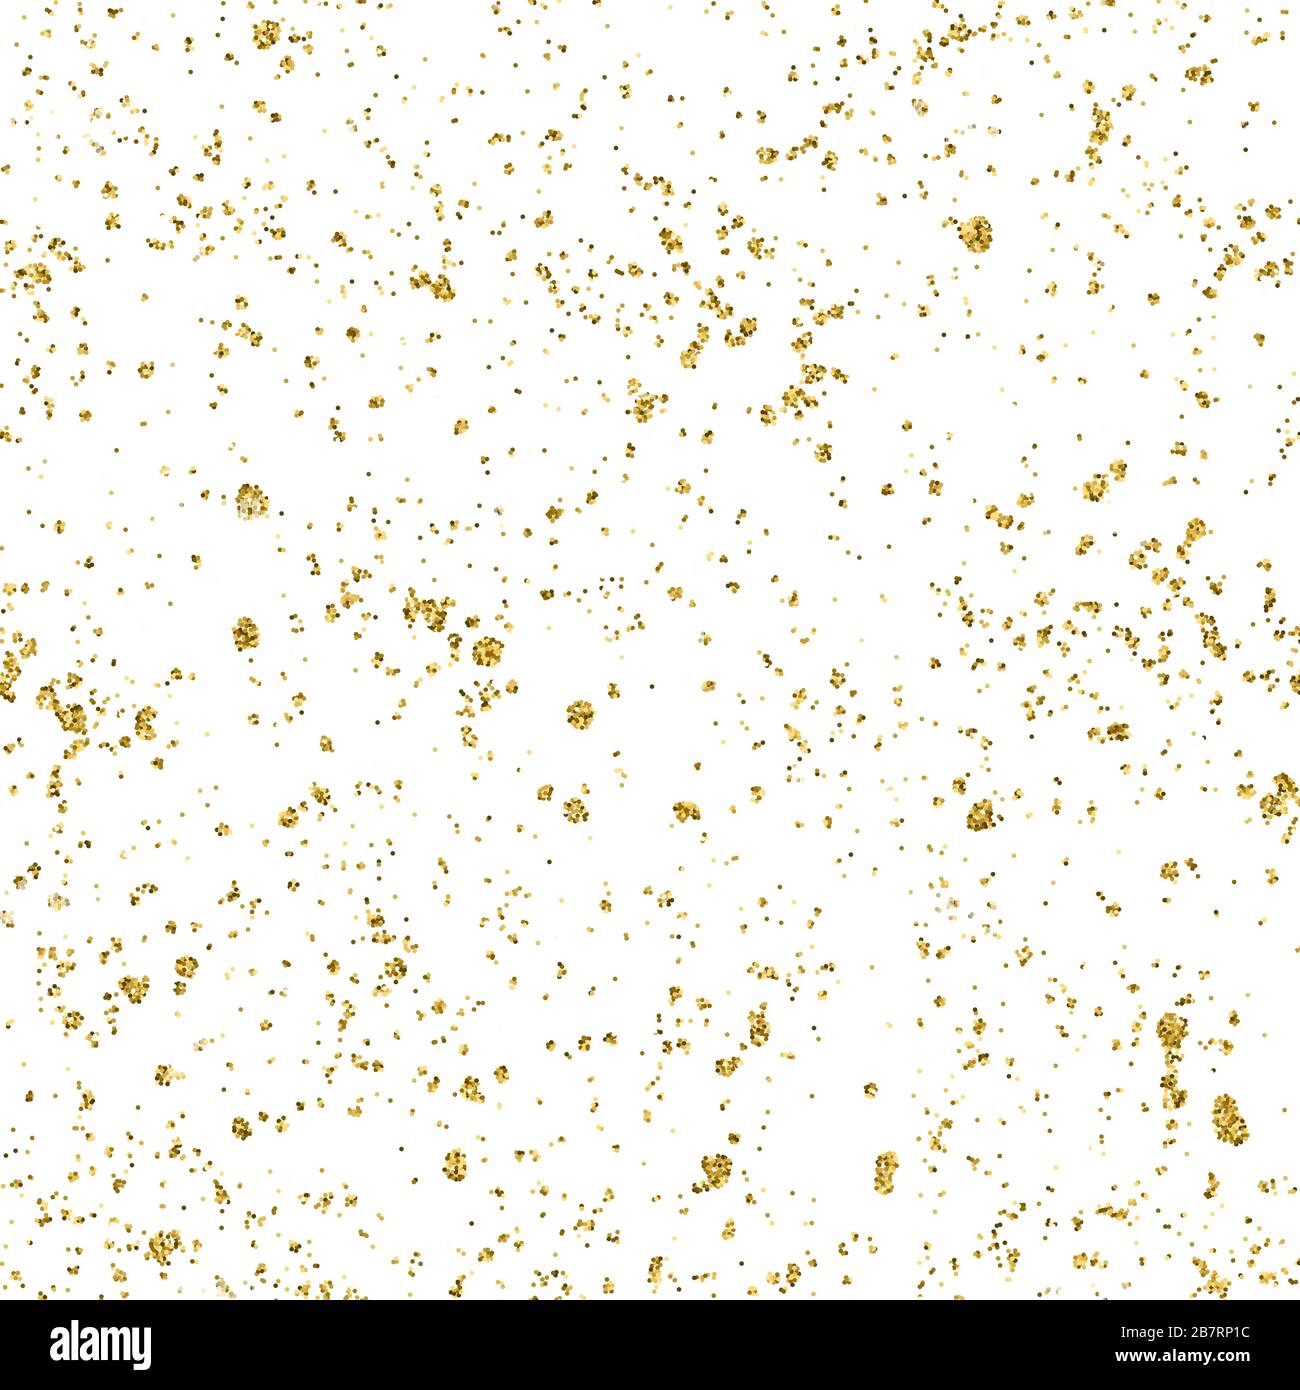 Abstrakter Vektor glänzender goldener Strukturstaub, Flecken mit glitzernder Goldfolie auf weißem Hintergrund. Goldener Folienglitzerhintergrund für Weihnachten, Hochzeit Stock Vektor